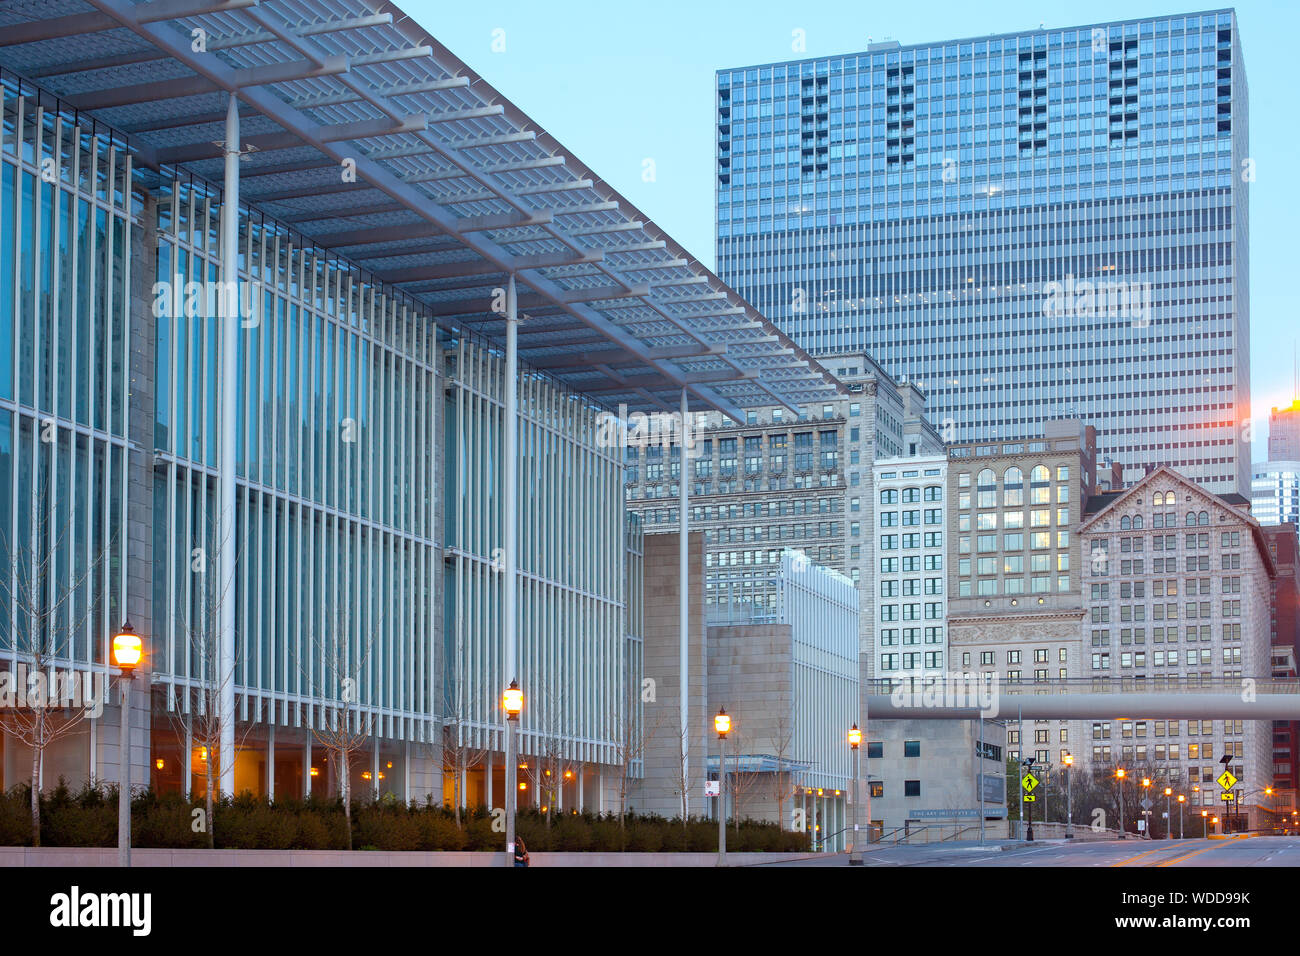 Chicago, Illinois, EE.UU. - El Instituto de Arte de Chicago al amanecer. Foto de stock